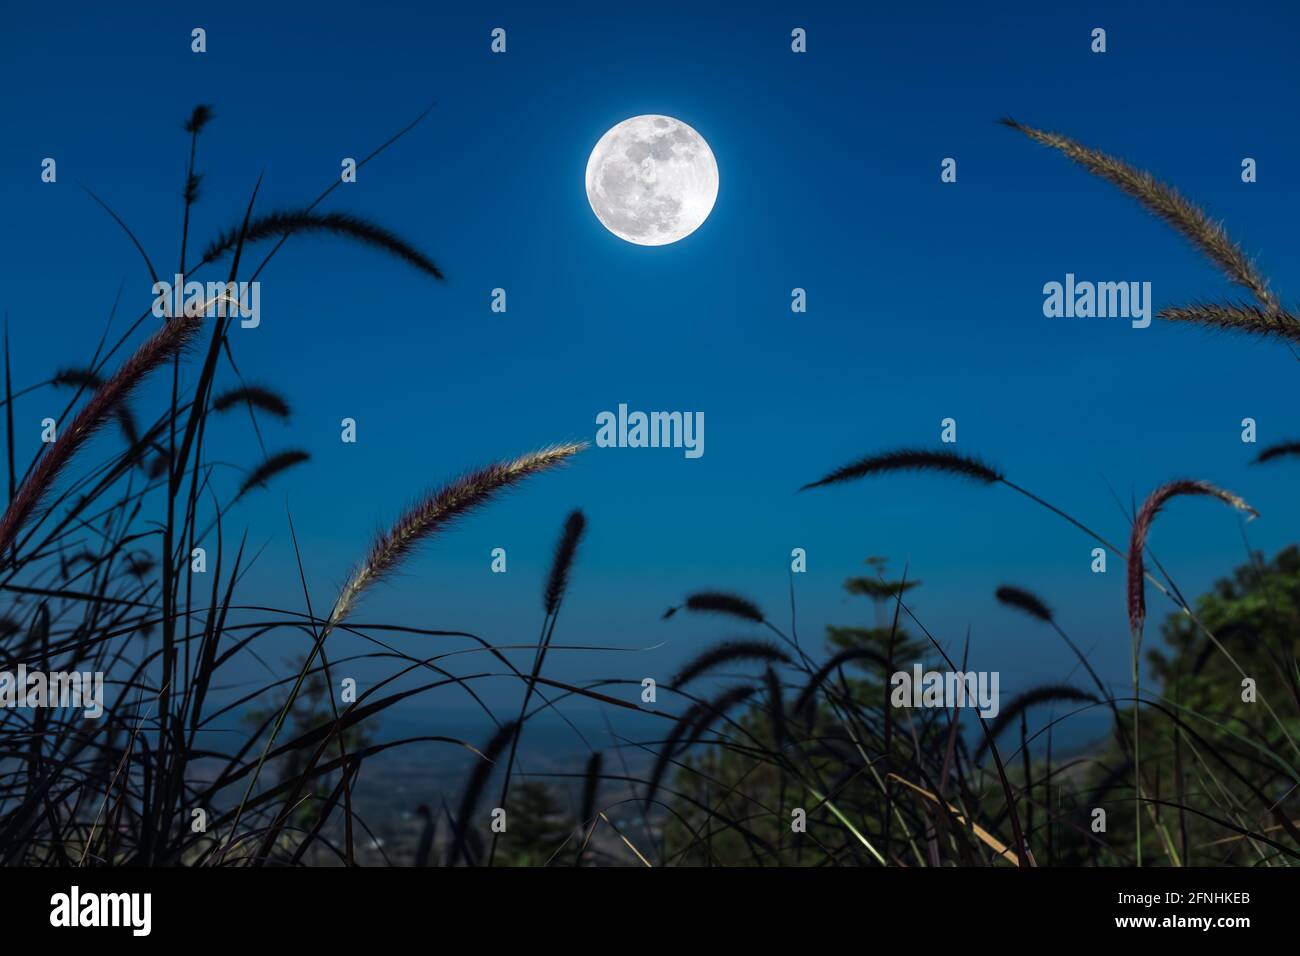 Piuma pennisetum o erba di missione crescono su cielo blu e luminoso sfondo luna piena. All'aperto di notte. (Fuoco selettivo) Foto Stock